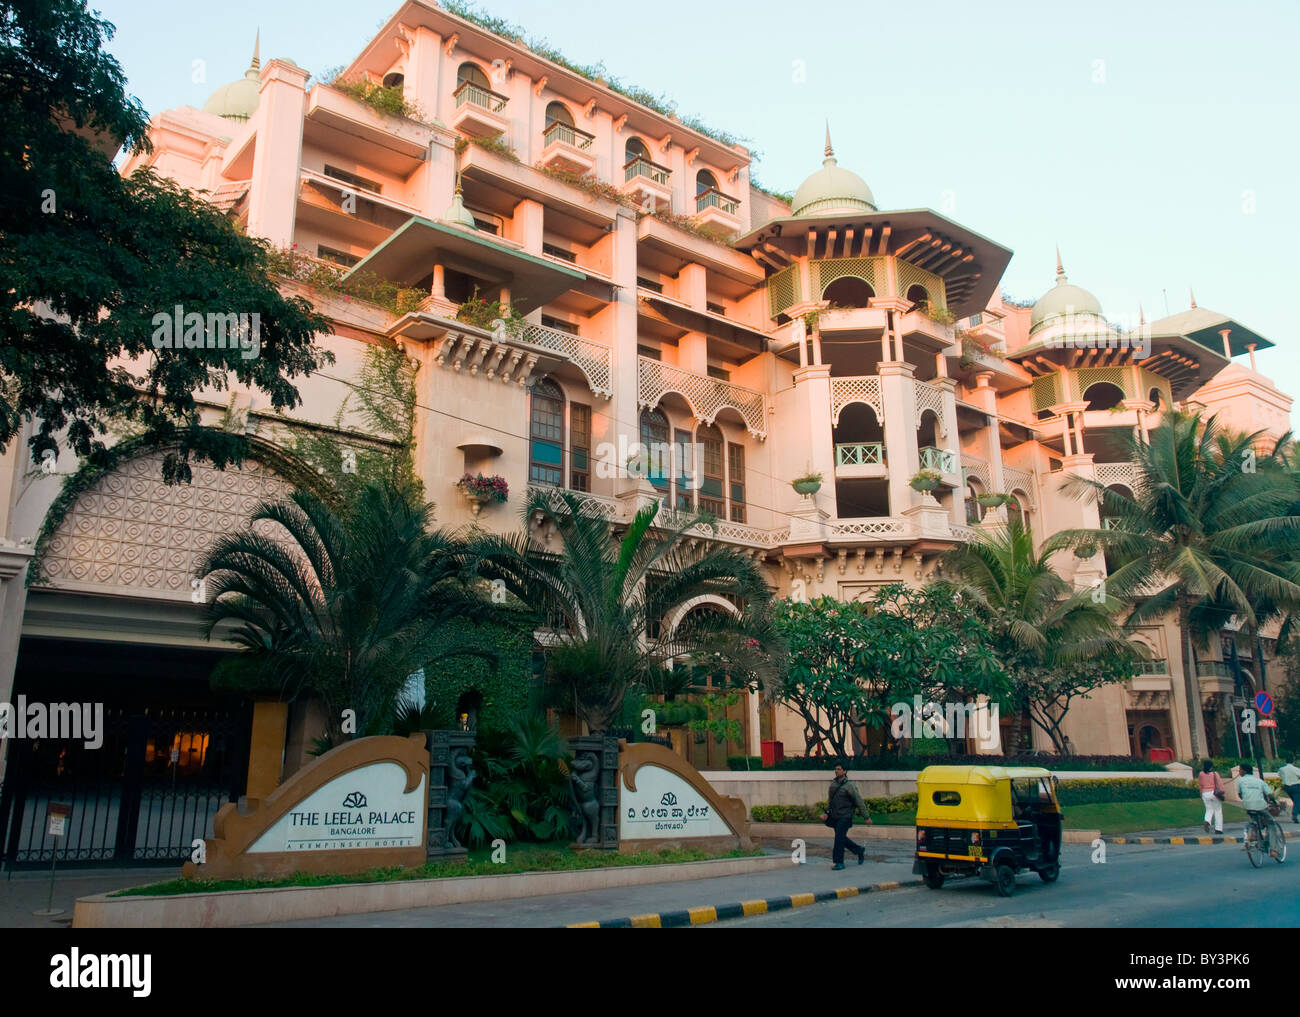 The Leela Palace hotel in Bangalore India Stock Photo